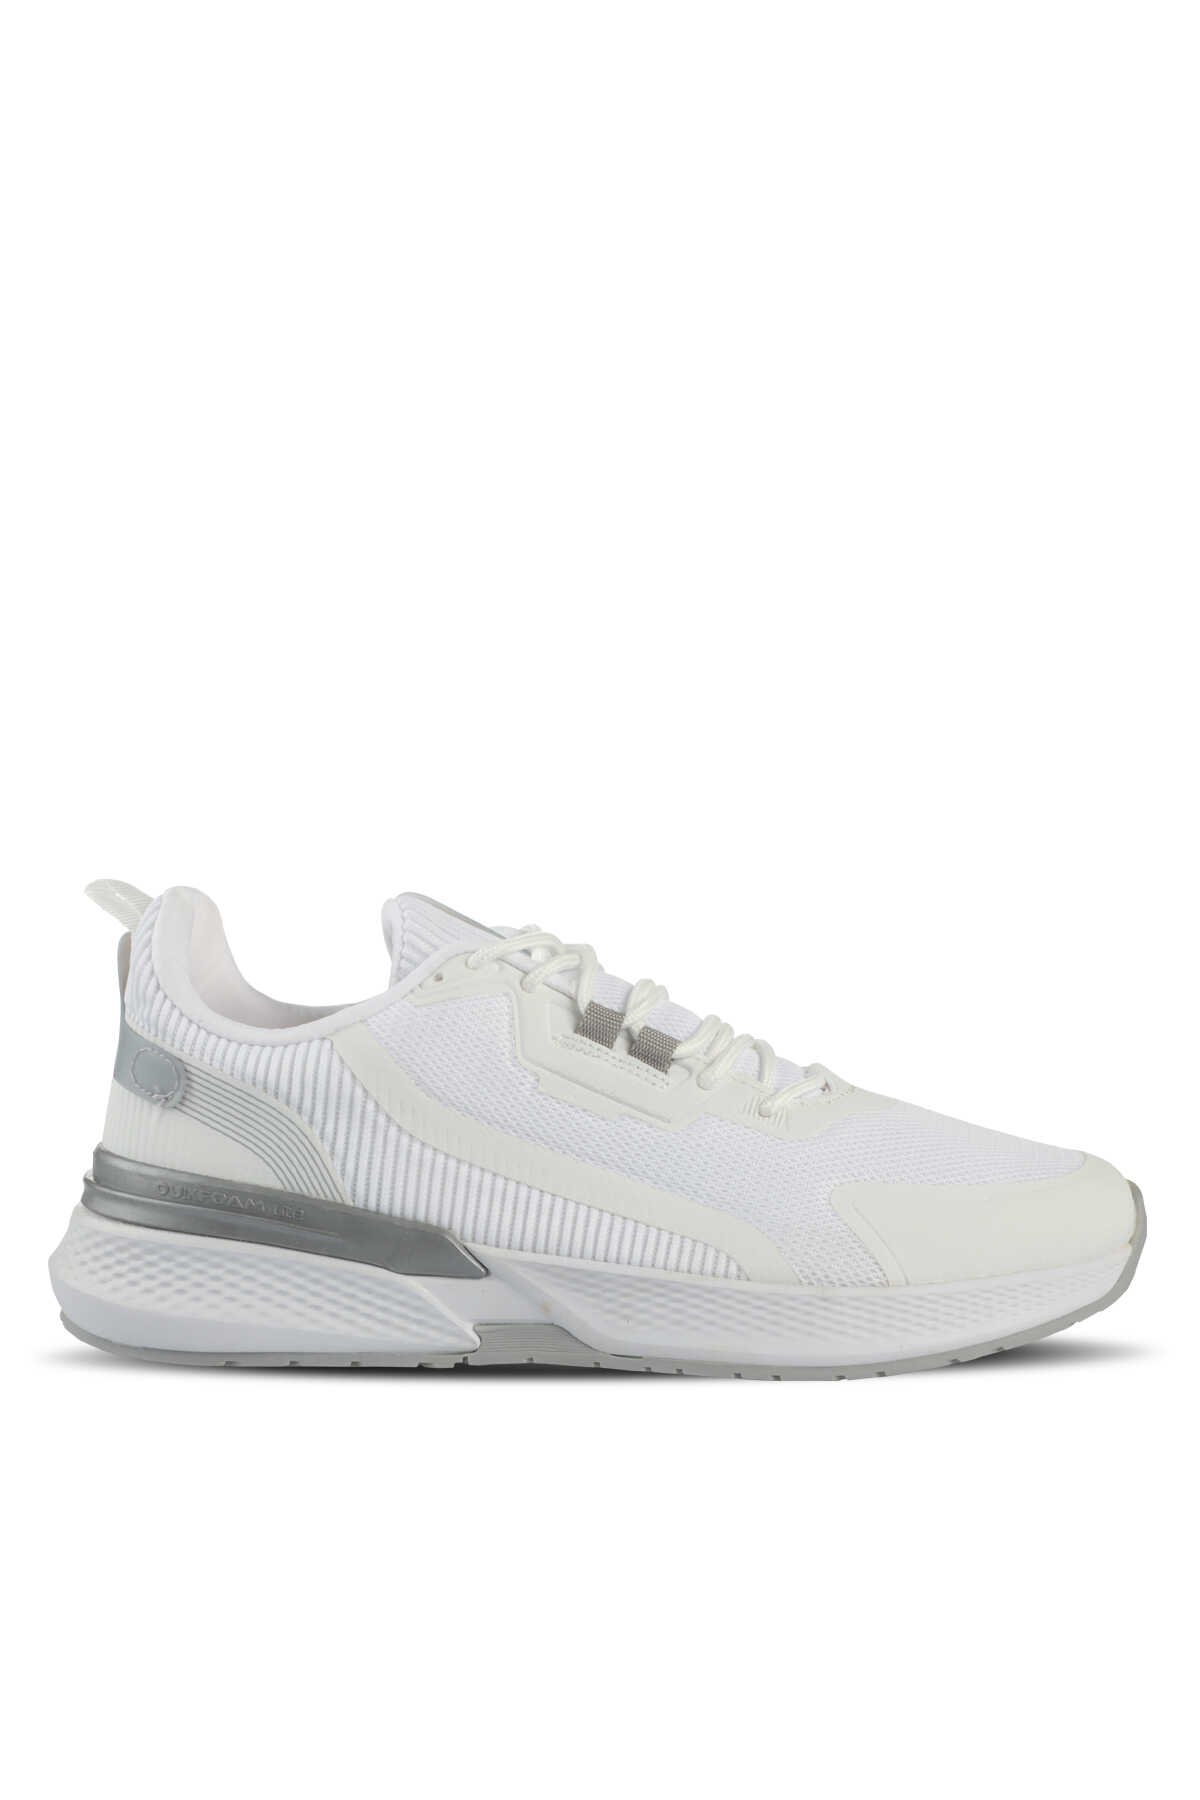 Slazenger - Slazenger FINAL Sneaker Erkek Ayakkabı Beyaz